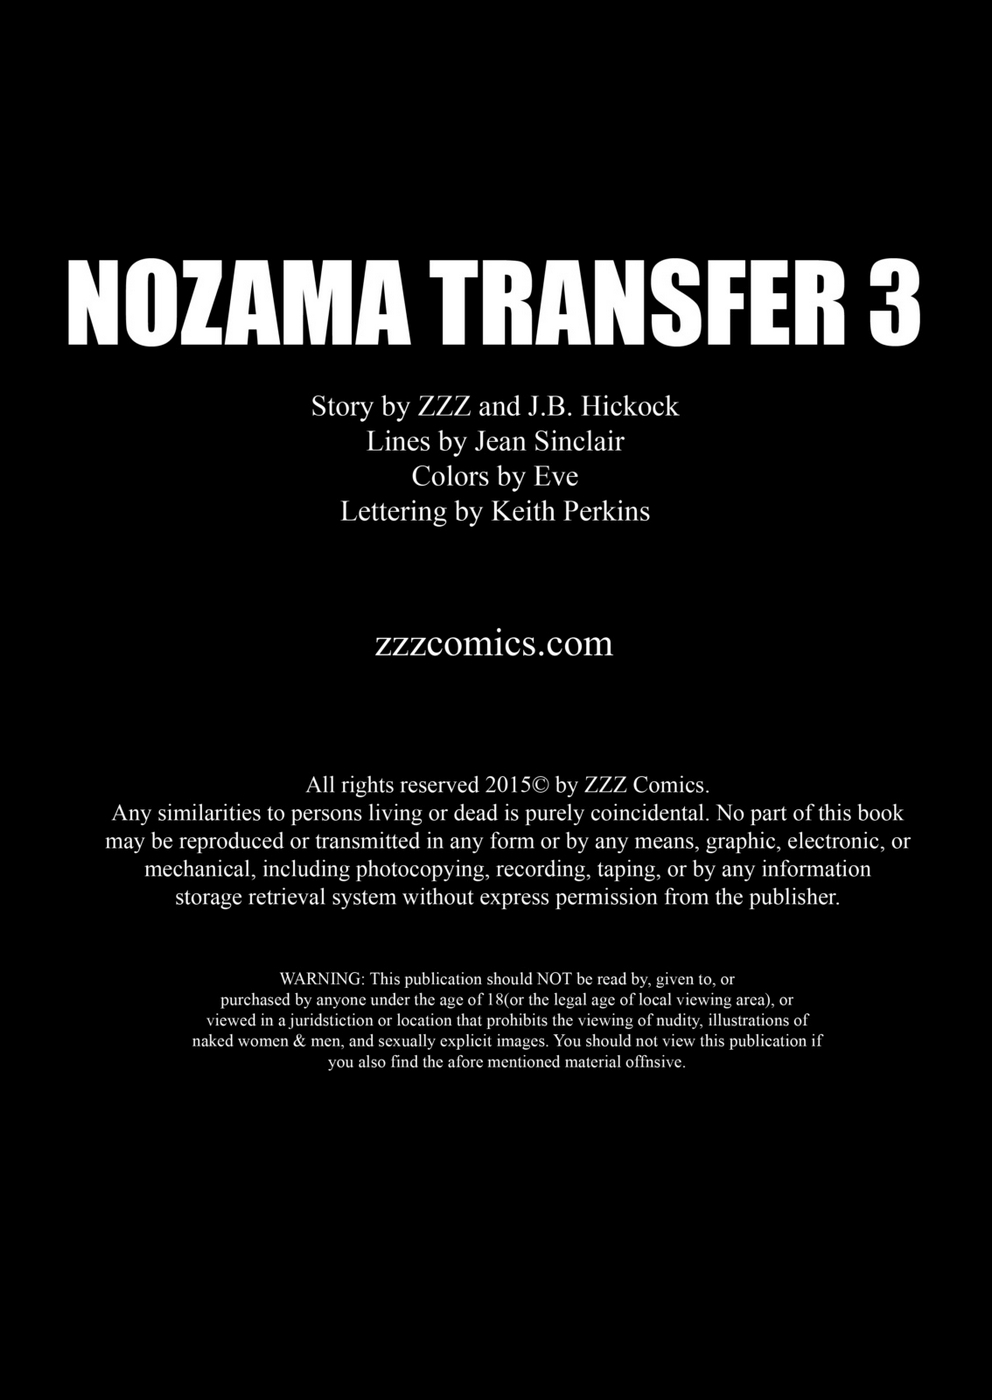 zzz nozama การถ่ายโอน 3